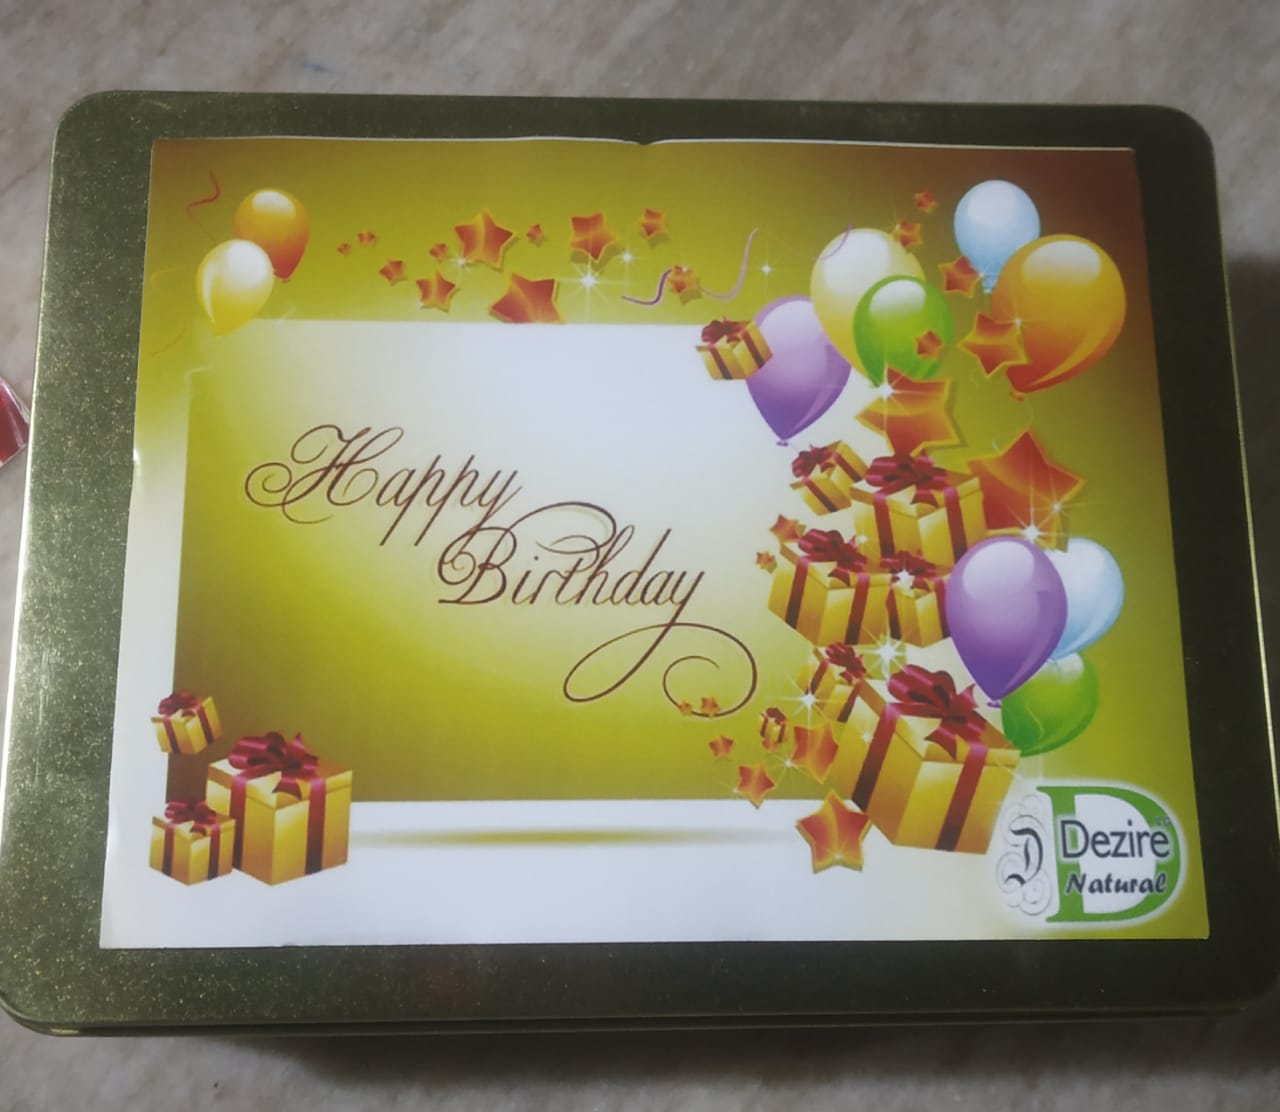 Happy Birthday Celebration Plum Cake Gift Box